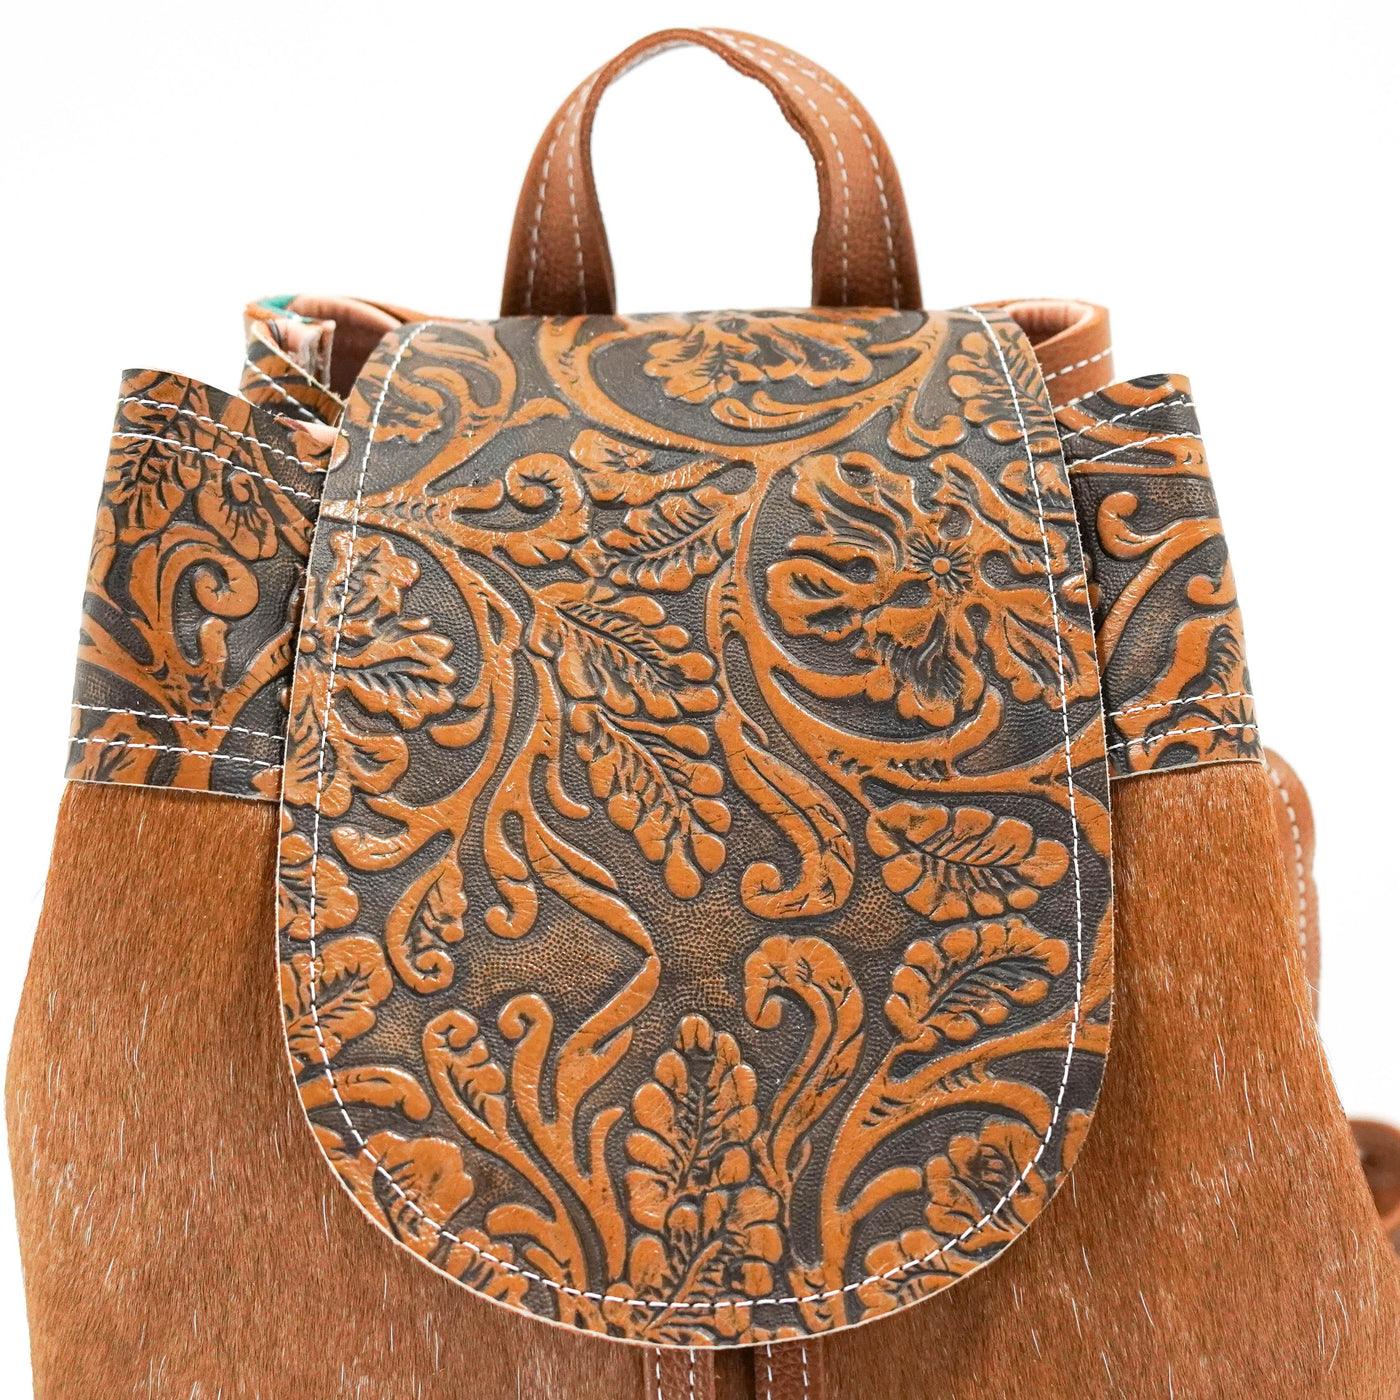 Mini Kelsea Backpack - Longhorn w/ Honey Tool-Mini Kelsea Backpack-Western-Cowhide-Bags-Handmade-Products-Gifts-Dancing Cactus Designs